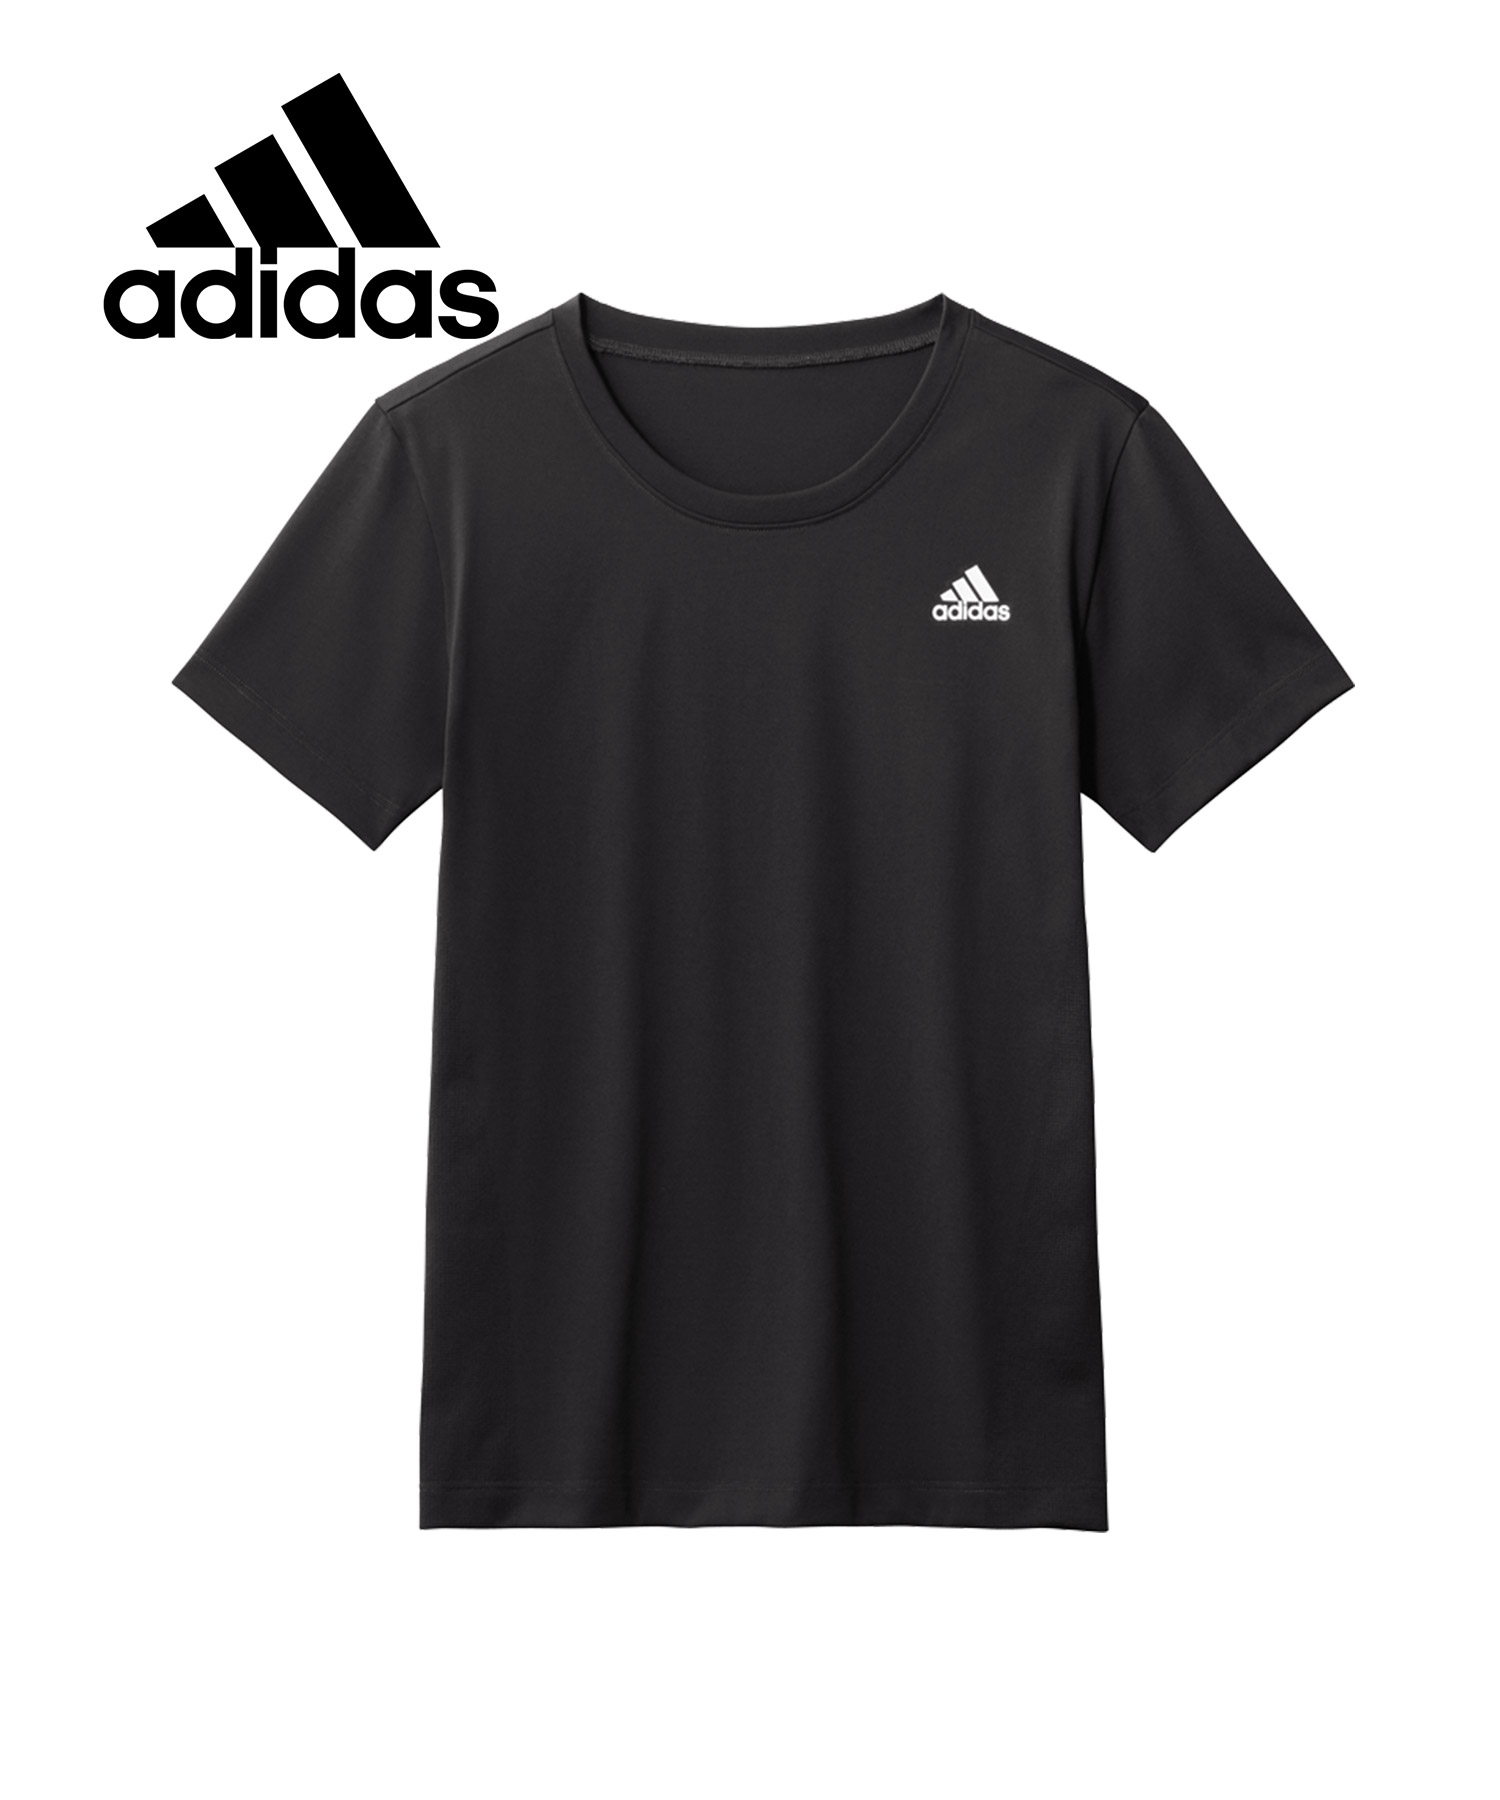 アディダス adidas Tシャツ メンズ 紳士 ジョギング ランナー トレーニング ジム アウトド...